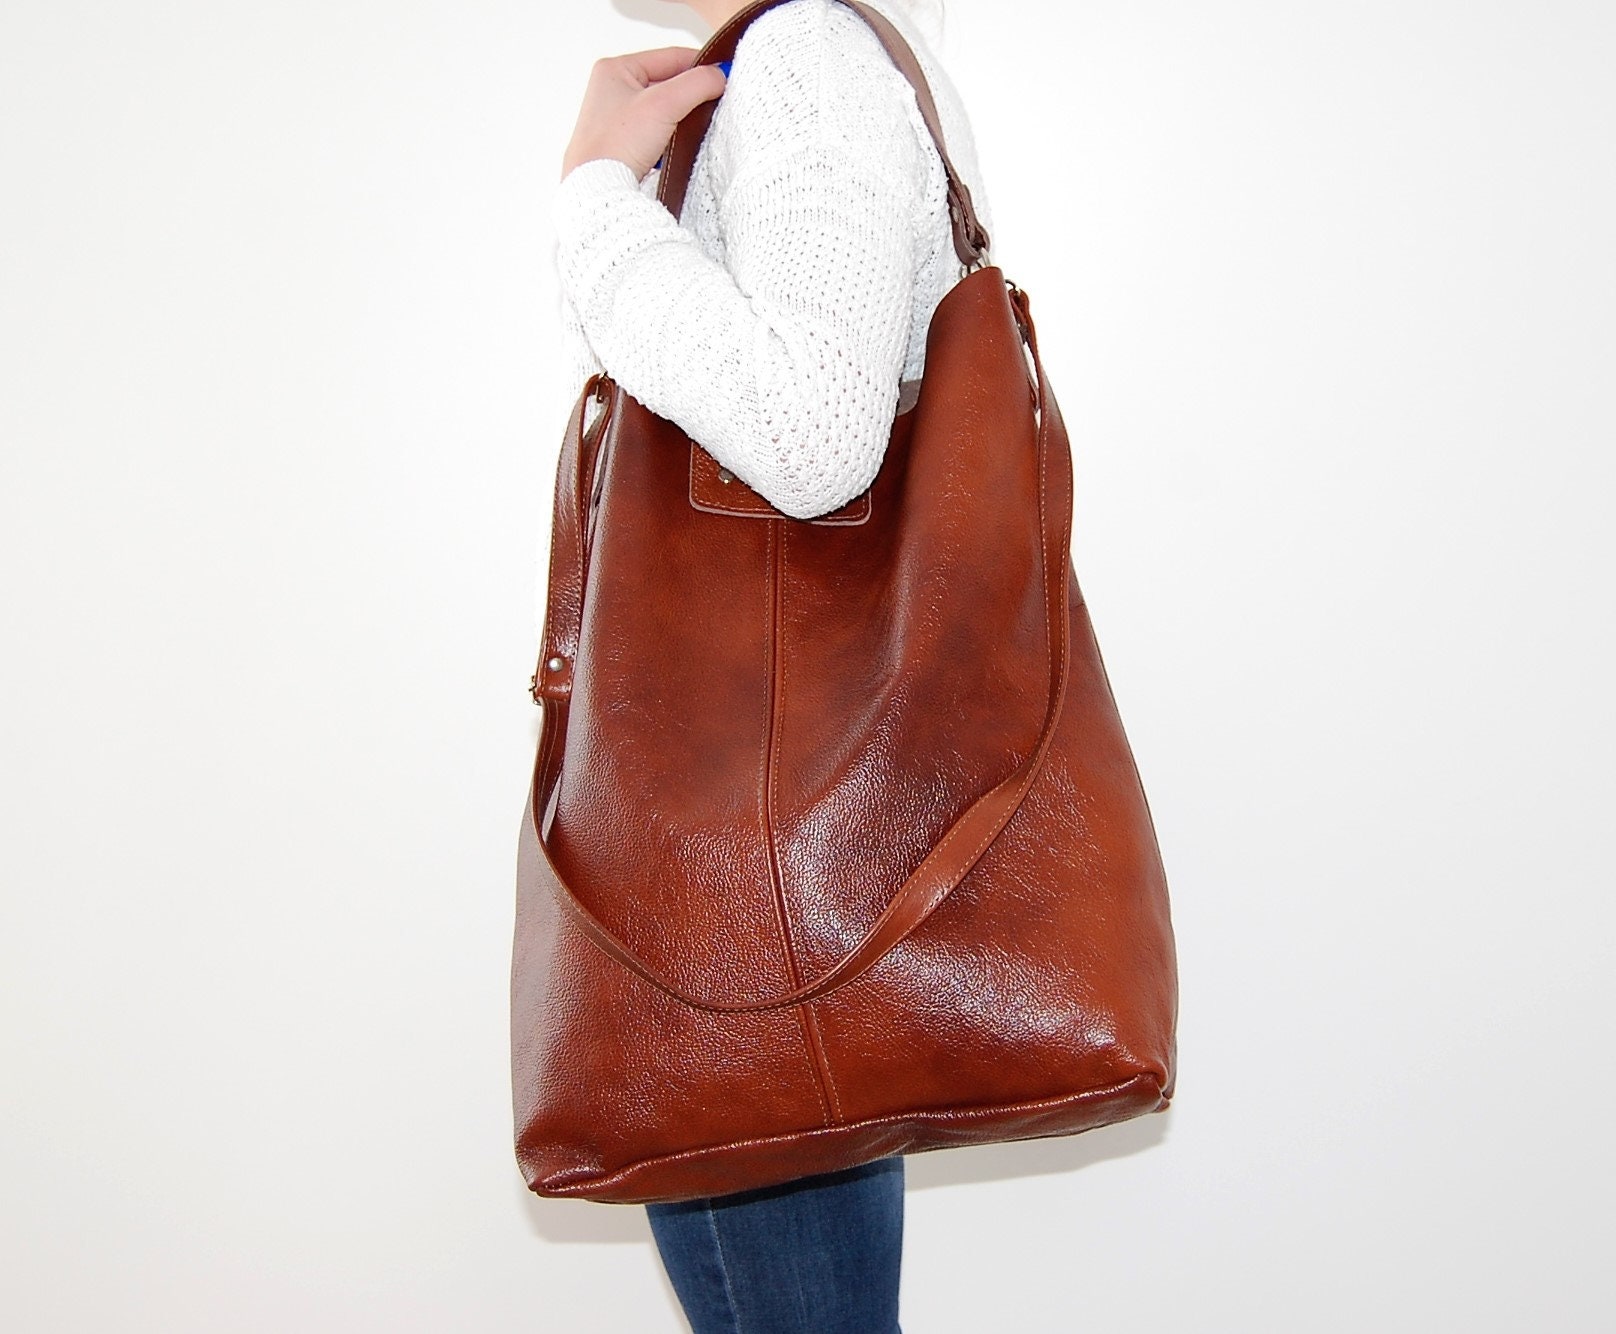 Bag Women Bag Large Bag Bag With Natural Leather Weekender - Etsy